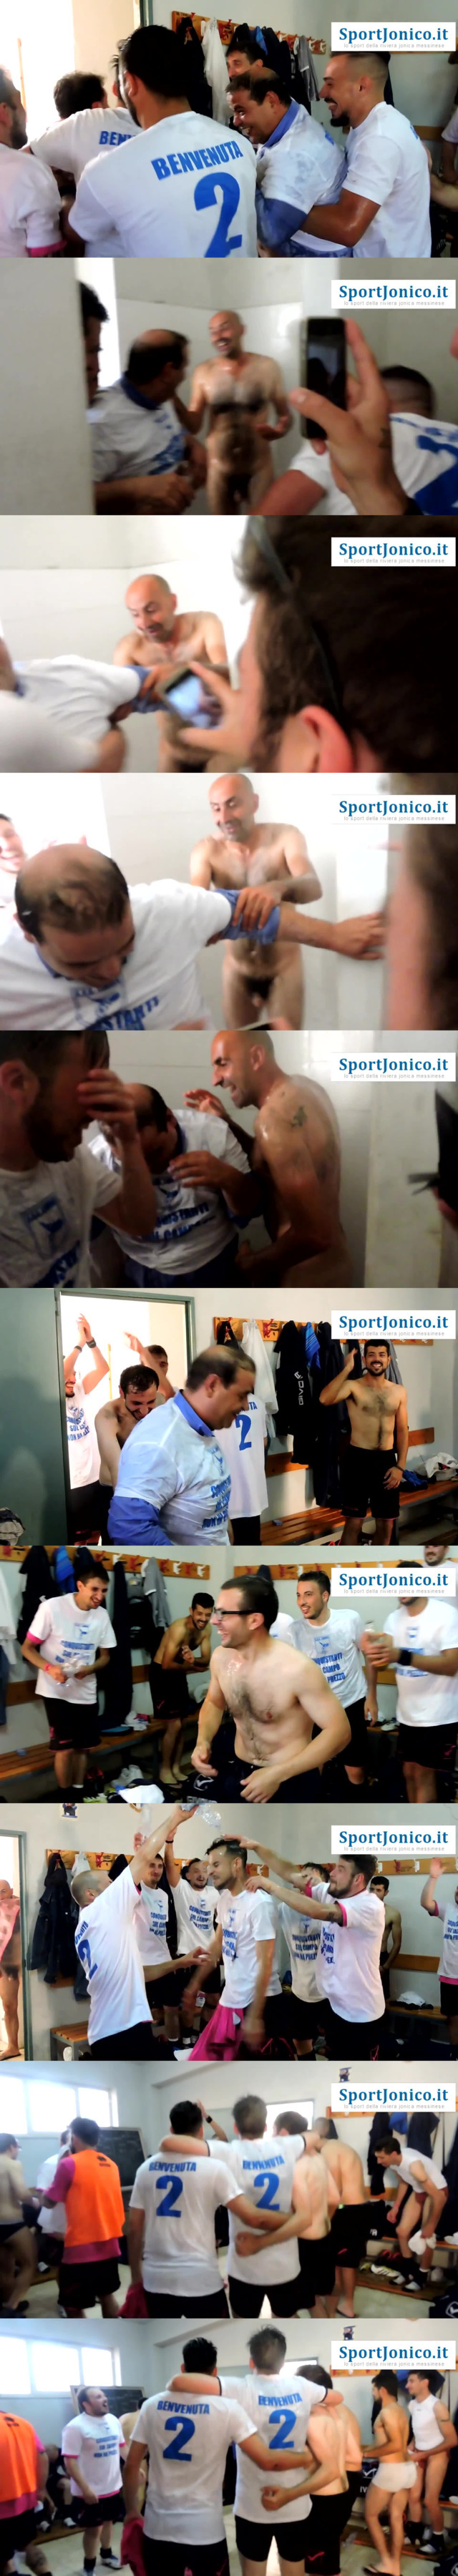 italian-footballers-naked-celebration-lockerroom